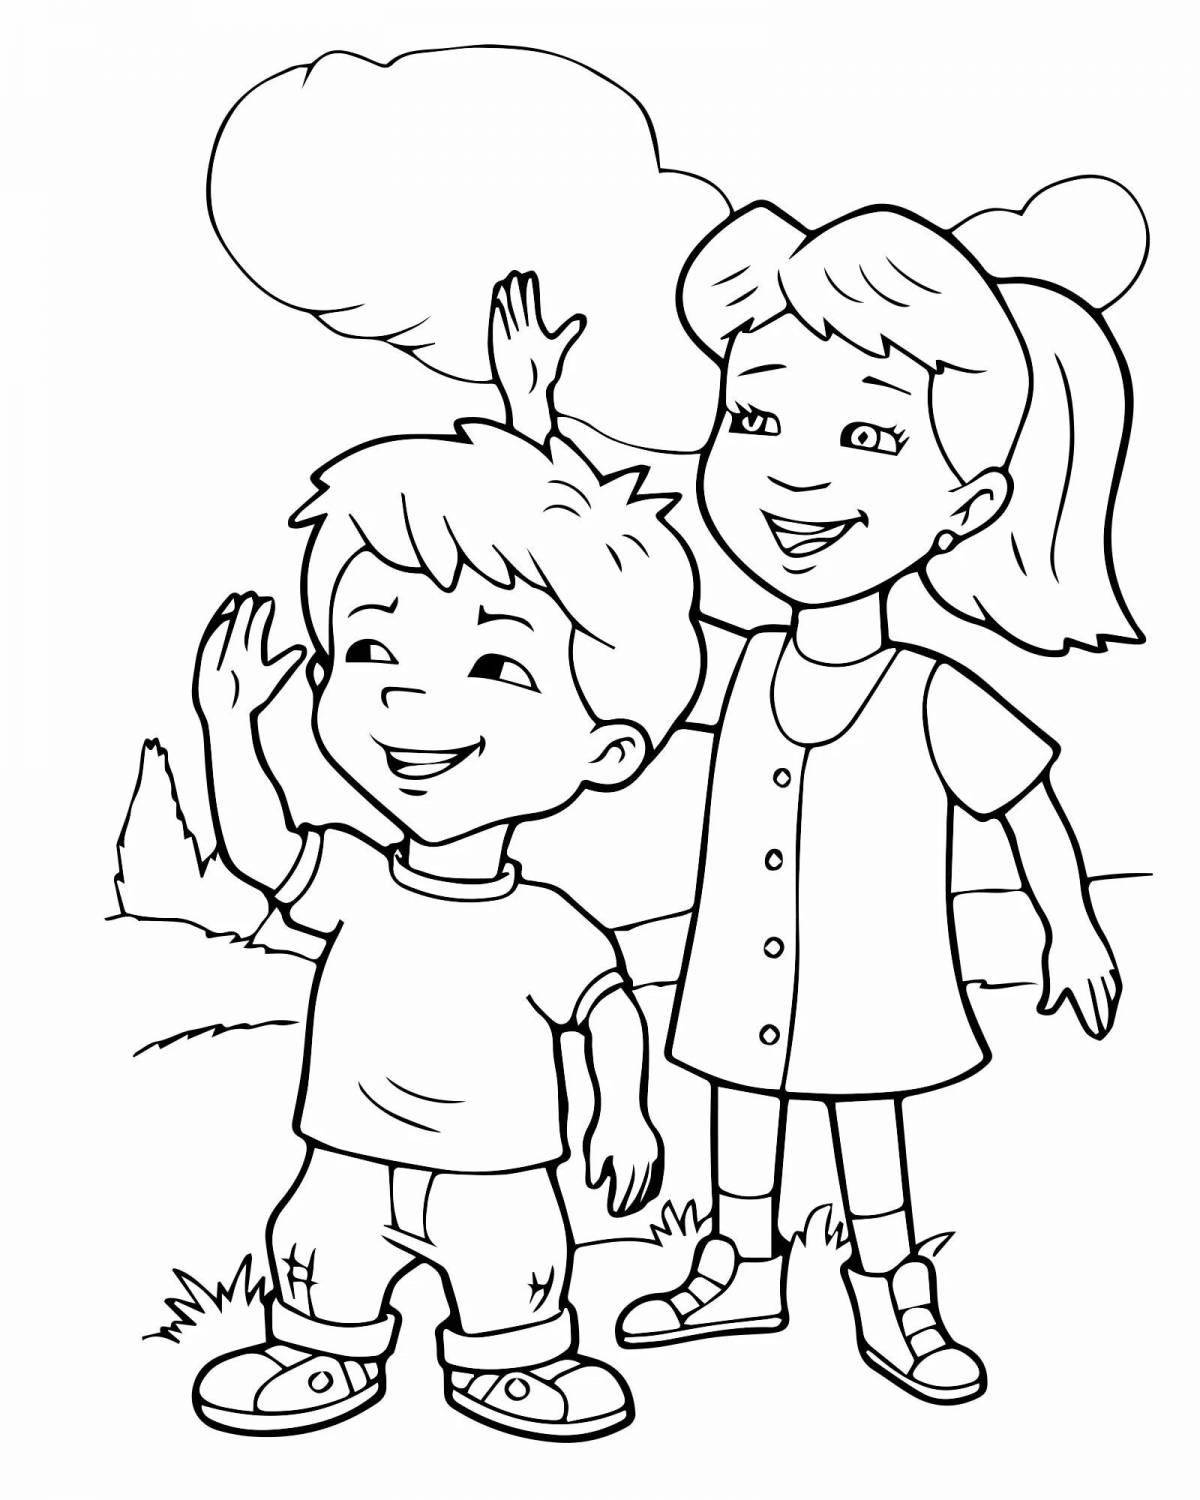 Красочная раскраска рисунок девочки и мальчика